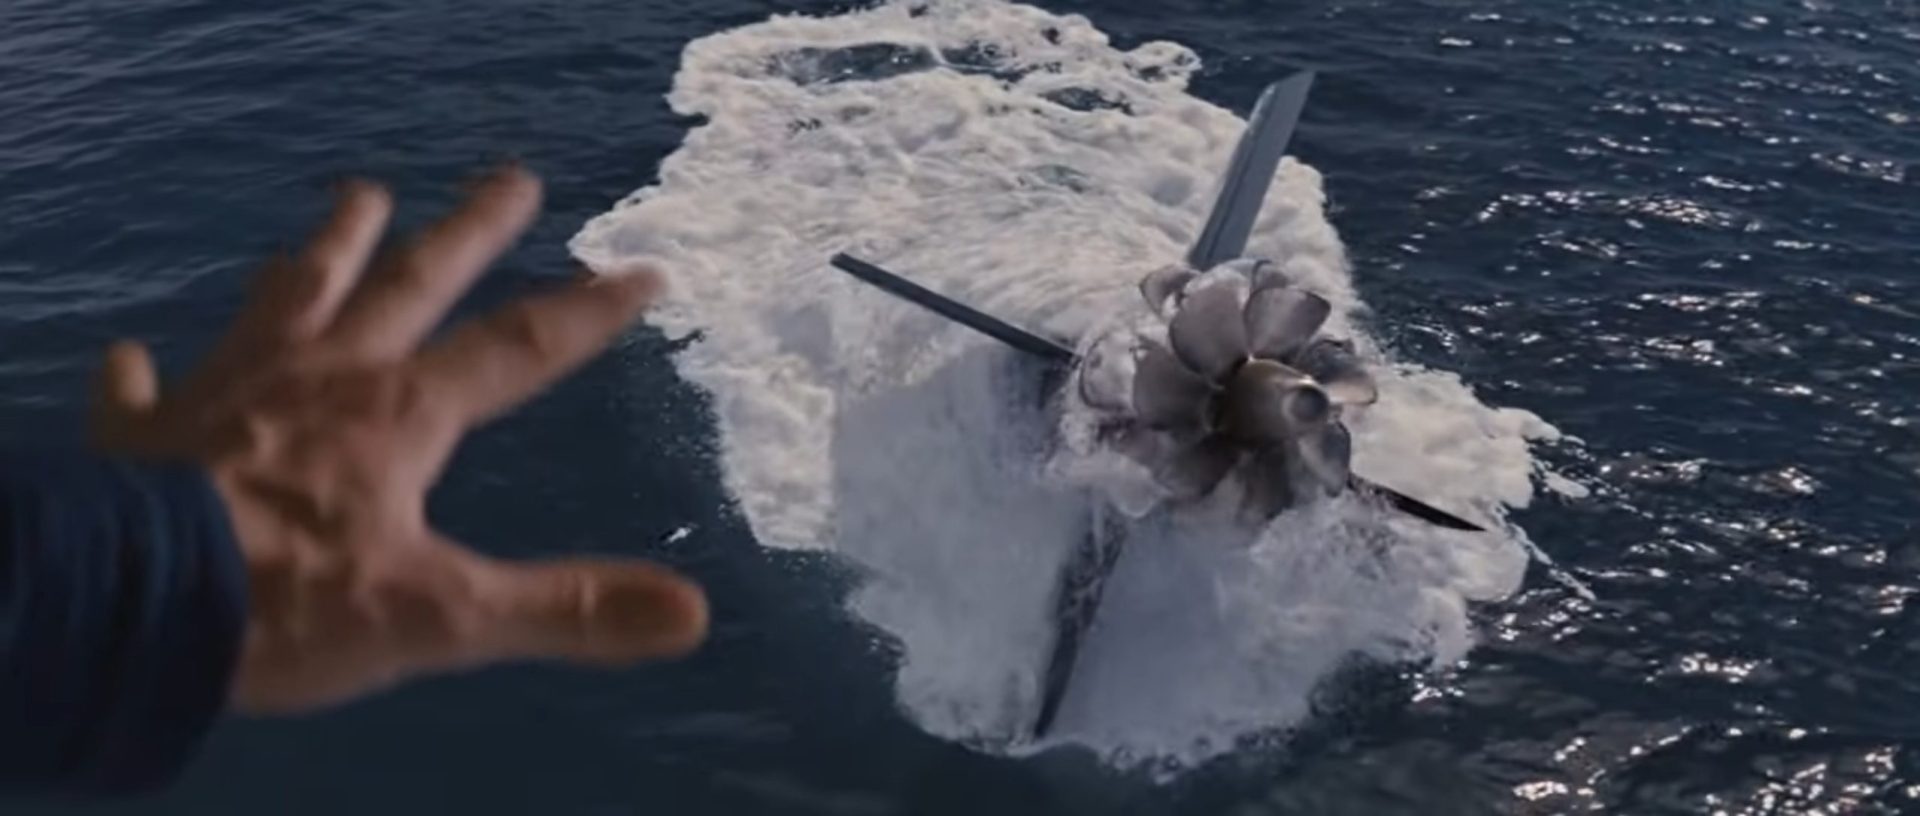 Im Vordergrund eine ausgestreckte Hand, weiter unten im ragt das Heck eines U-Bootes aus der Meeresoberfläche heraus.